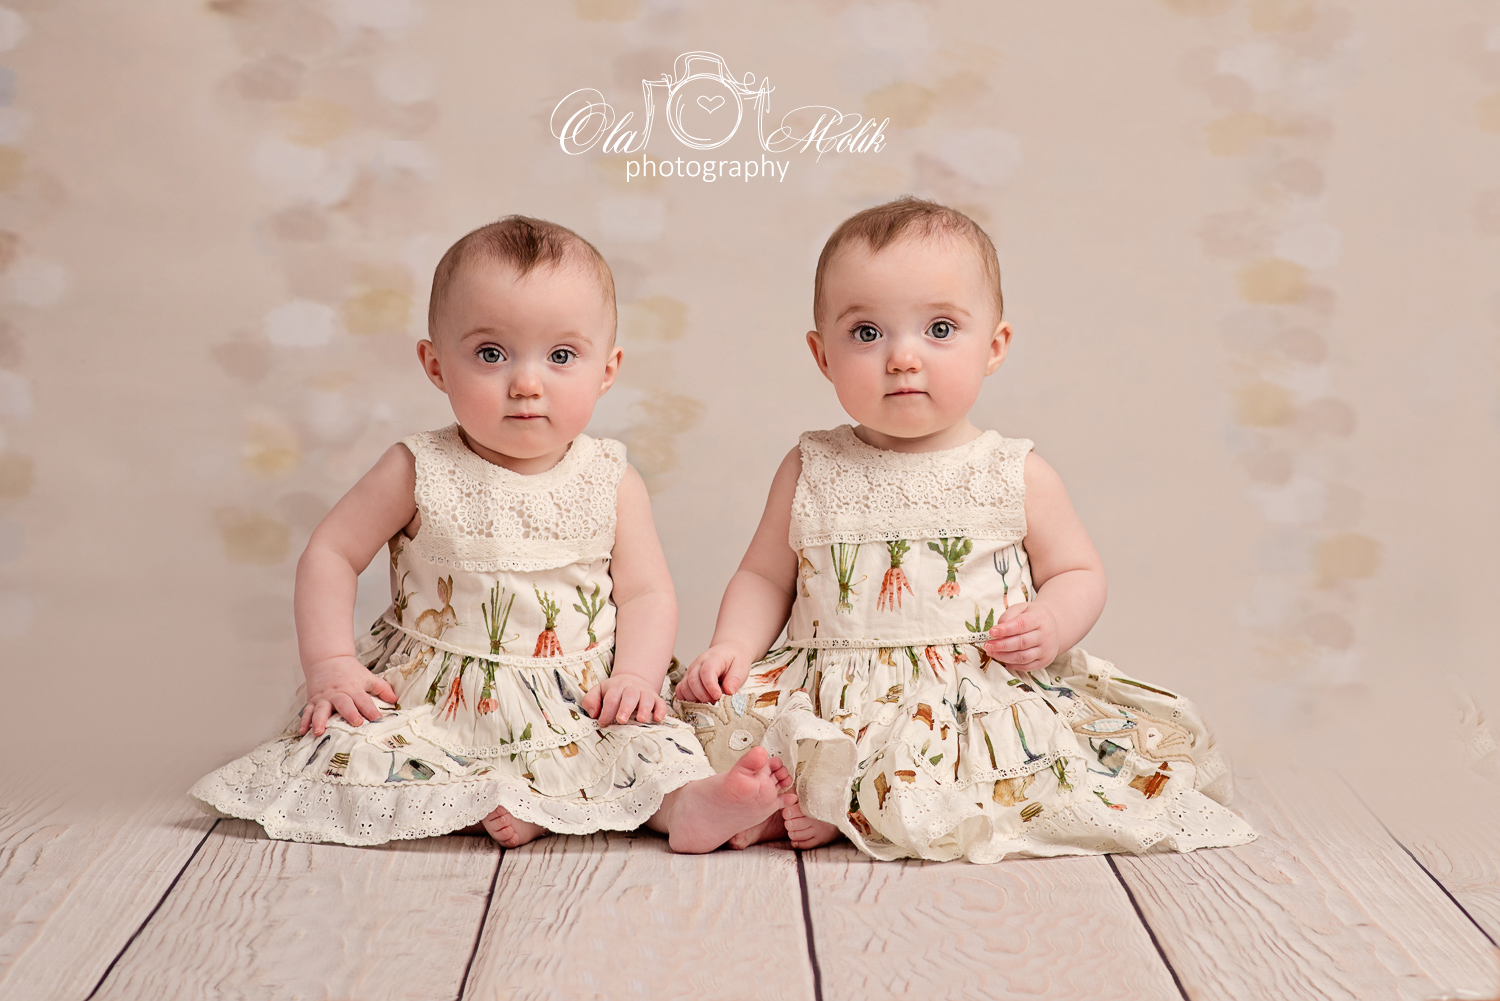 Twin Baby Girls Photographer Glasgow Ola Molik Photography-5a - Twin Baby Girls - HD Wallpaper 